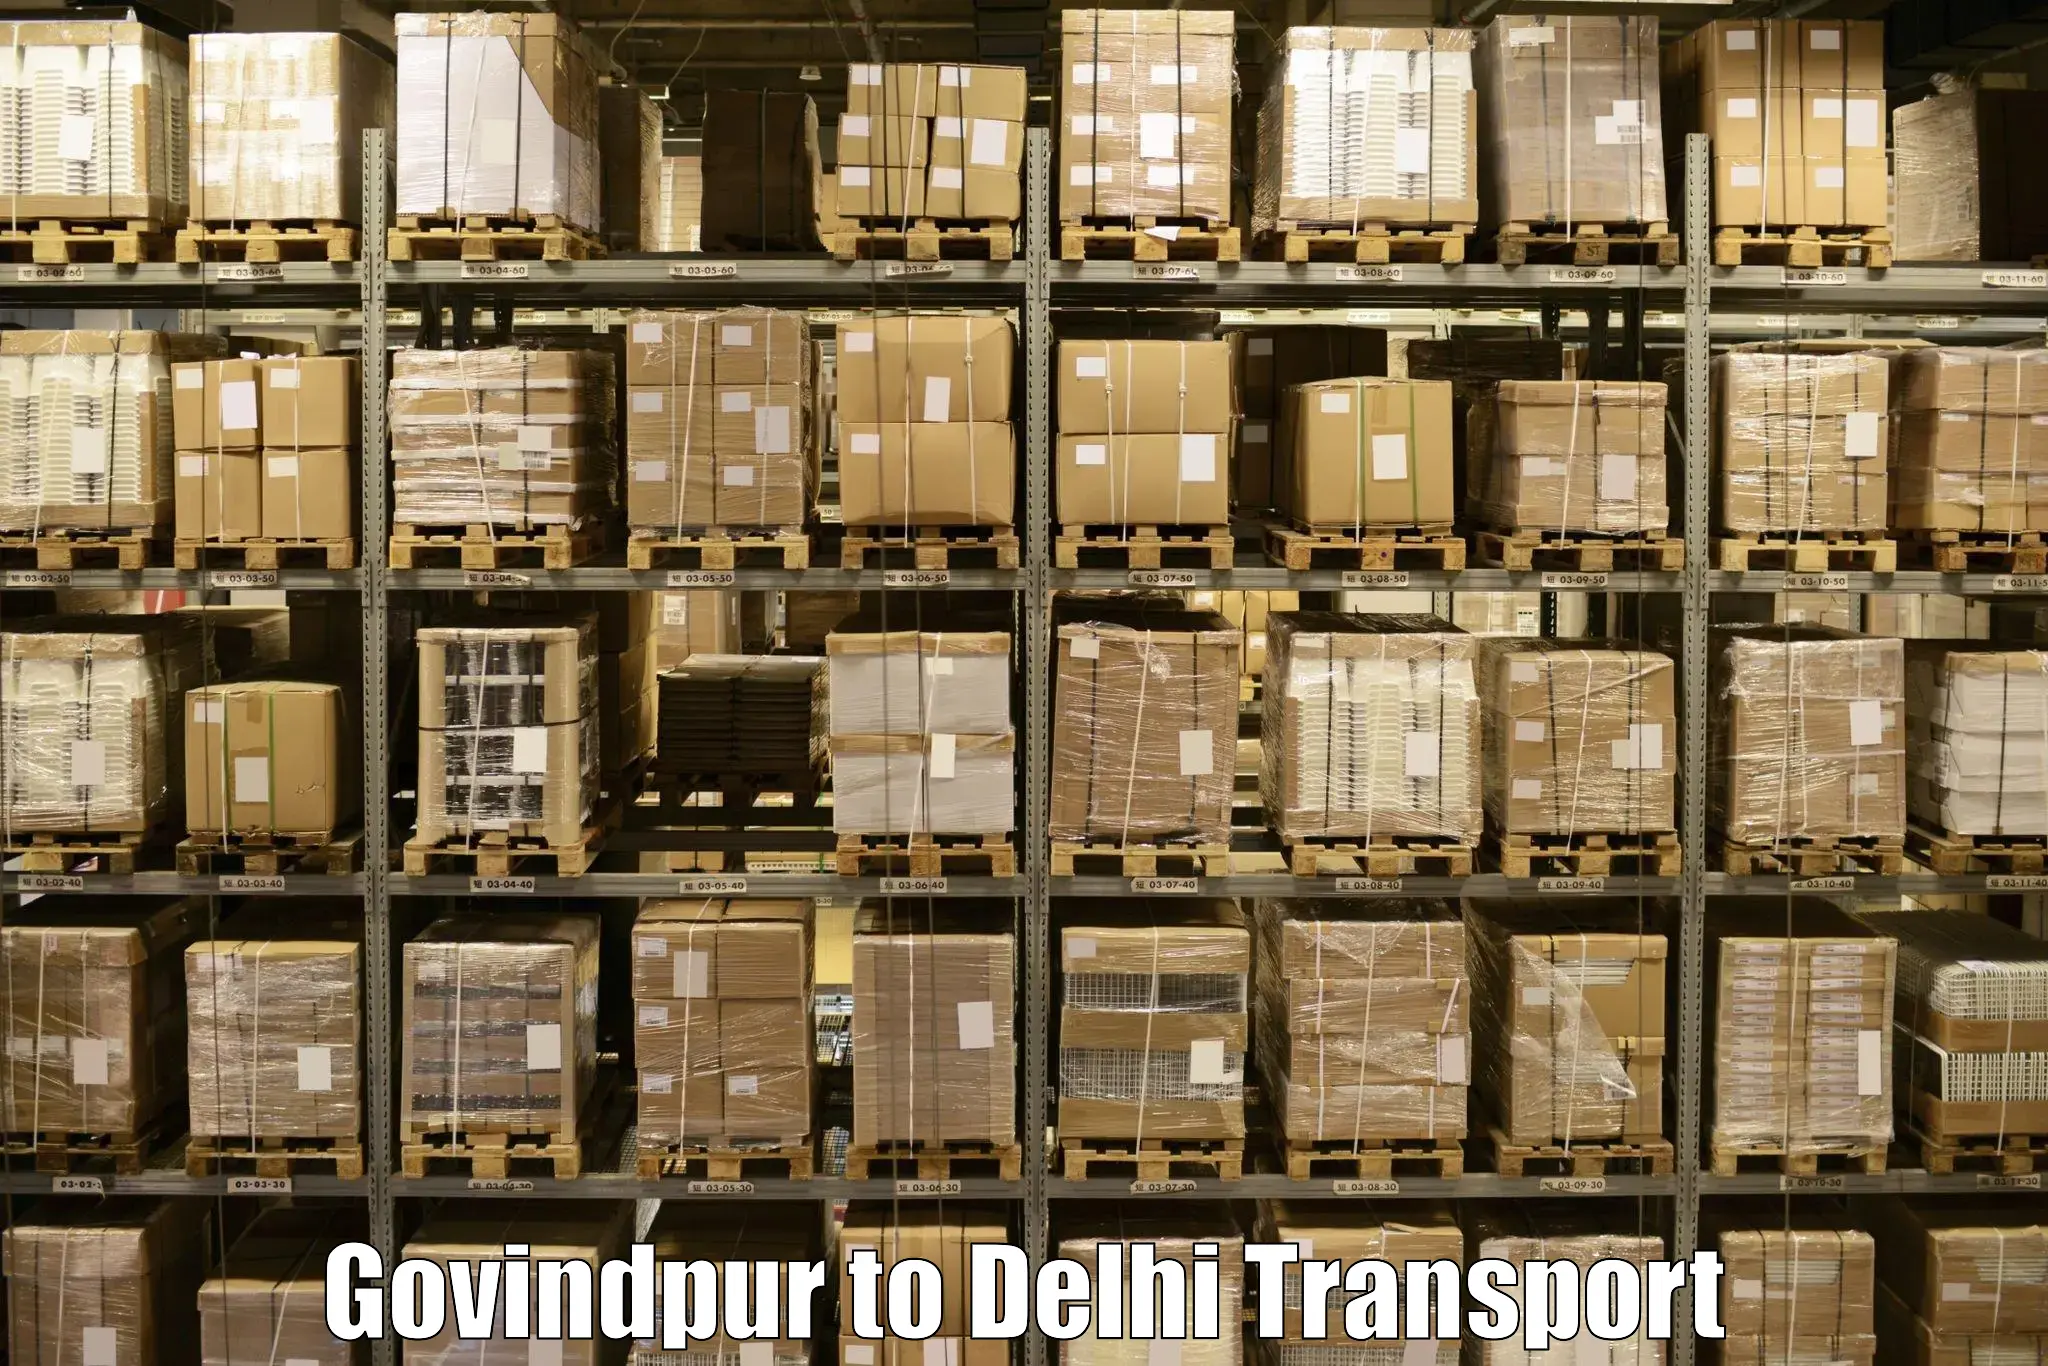 Daily parcel service transport Govindpur to Lodhi Road